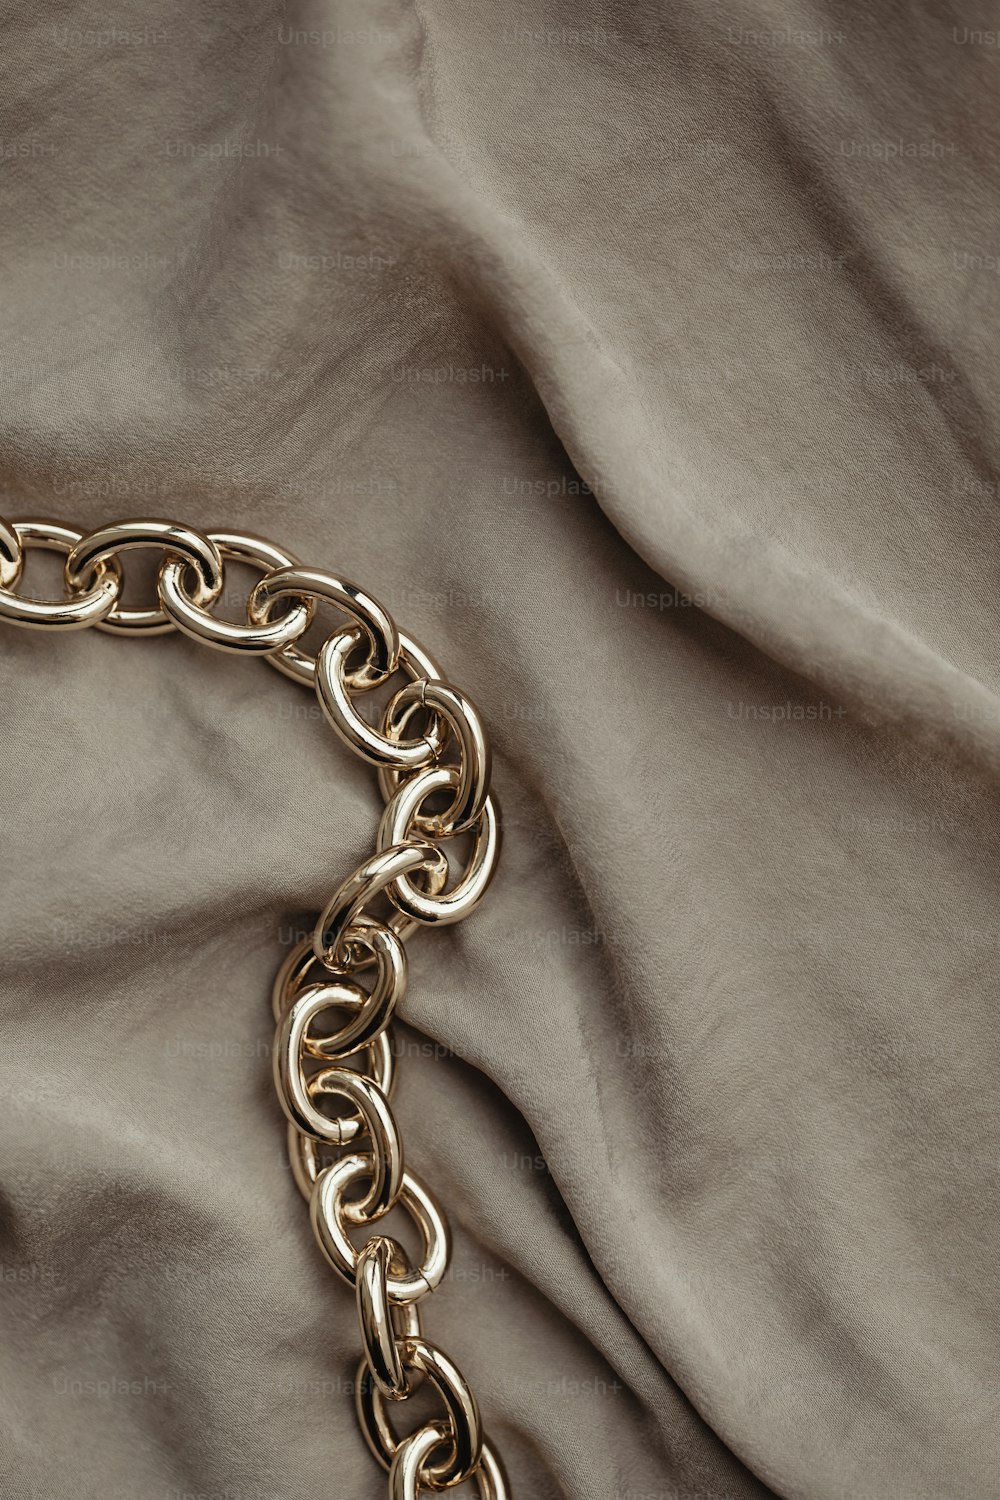 um close up de uma corrente de ouro em uma cama